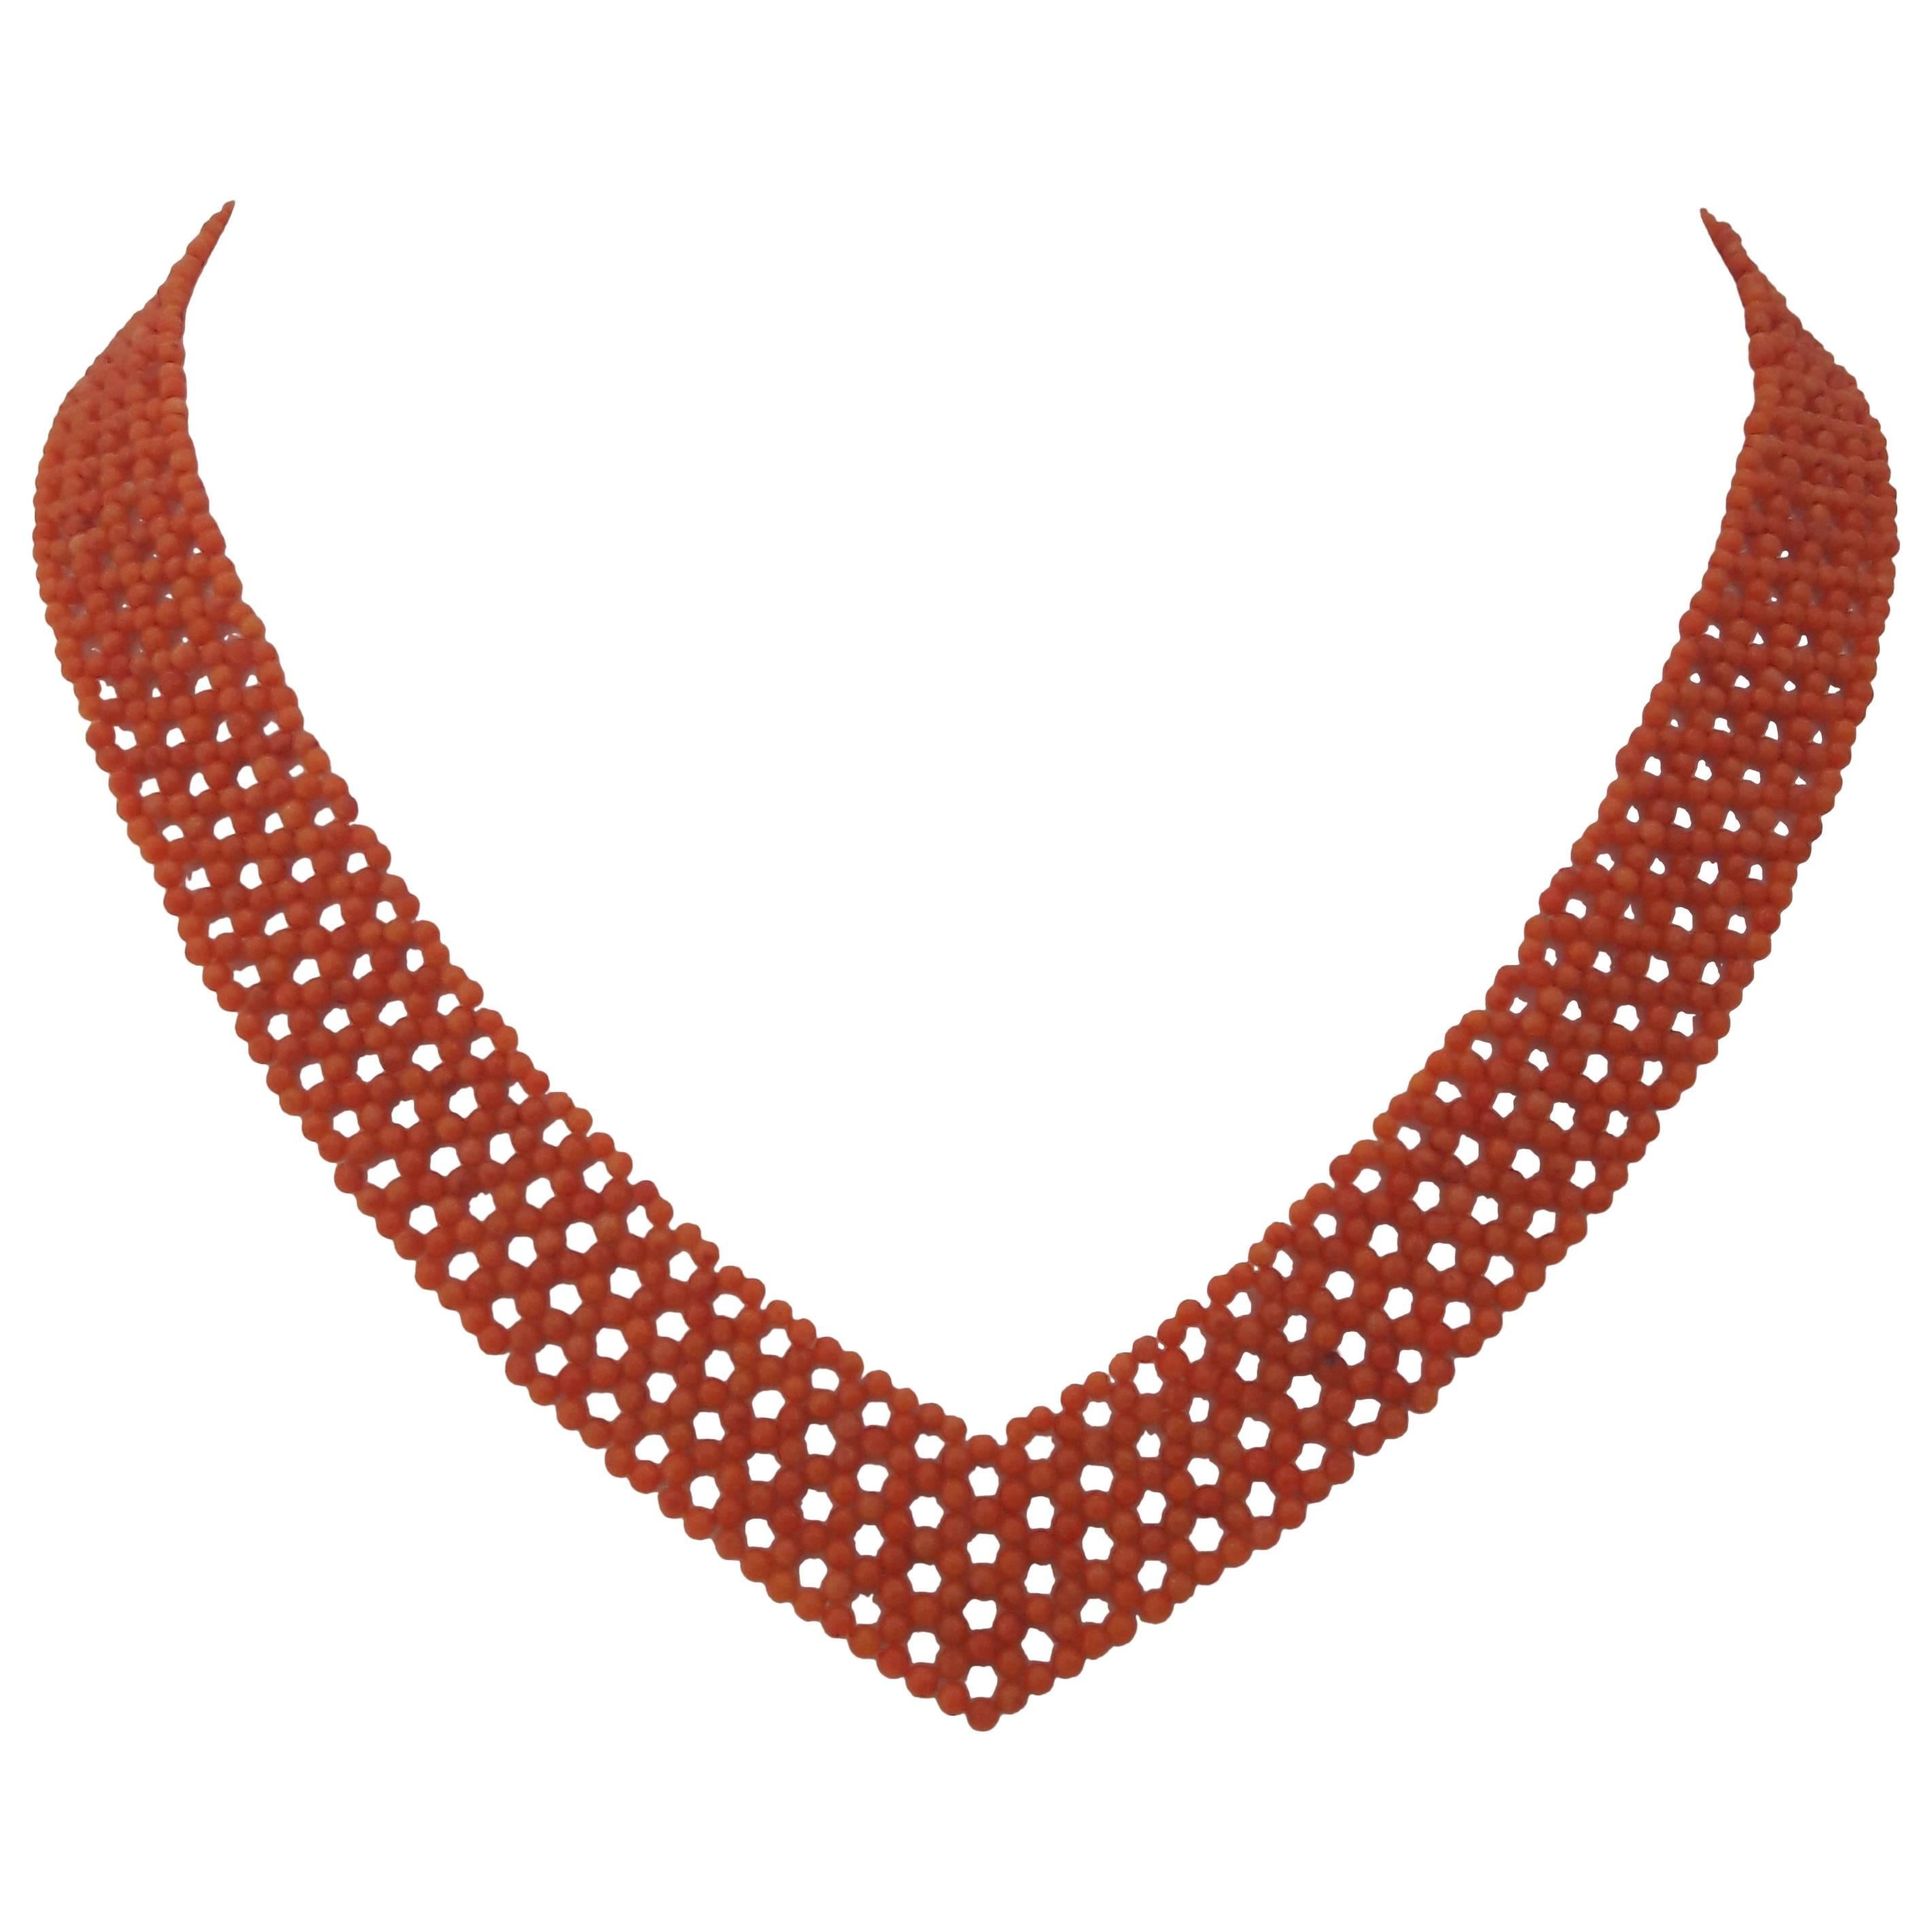 Marina J. Woven « V » tissé  Collier en forme de corail rouge-orange avec fermoir coulissant